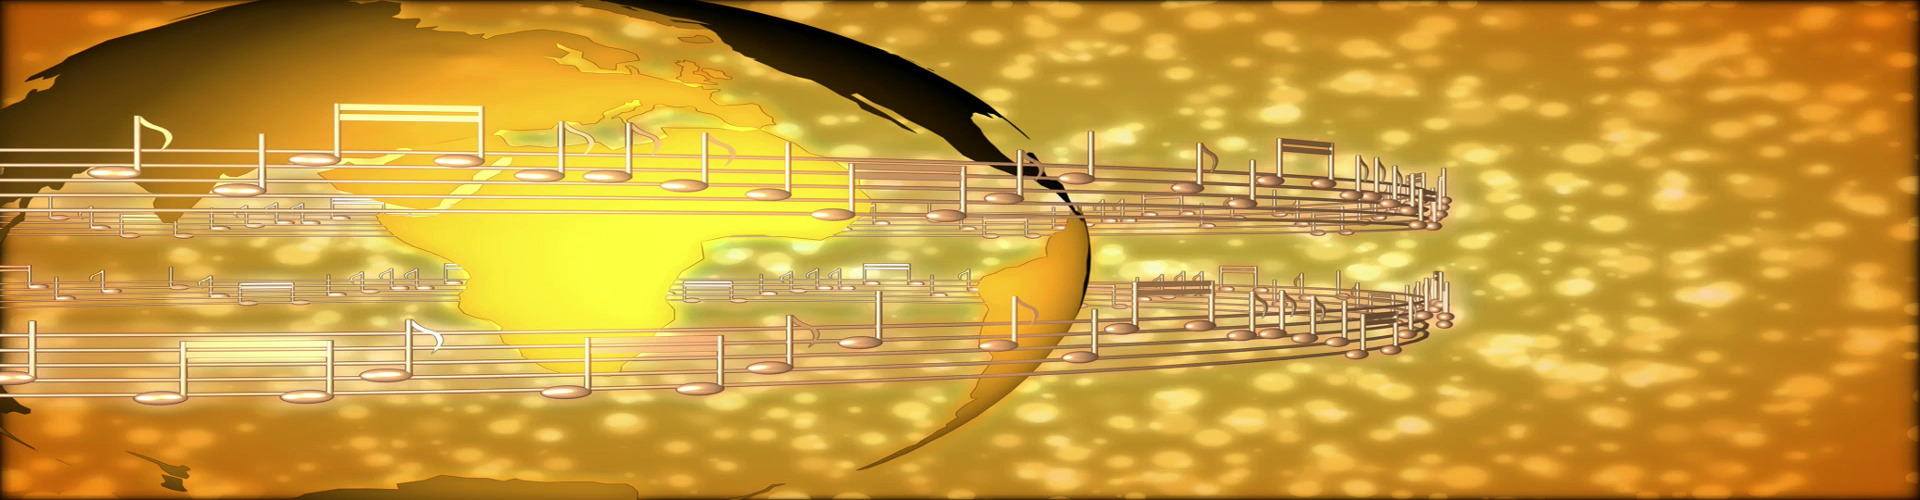 Des oiseaux sur des cables éléctrique en forme de notes sur une portée musicale